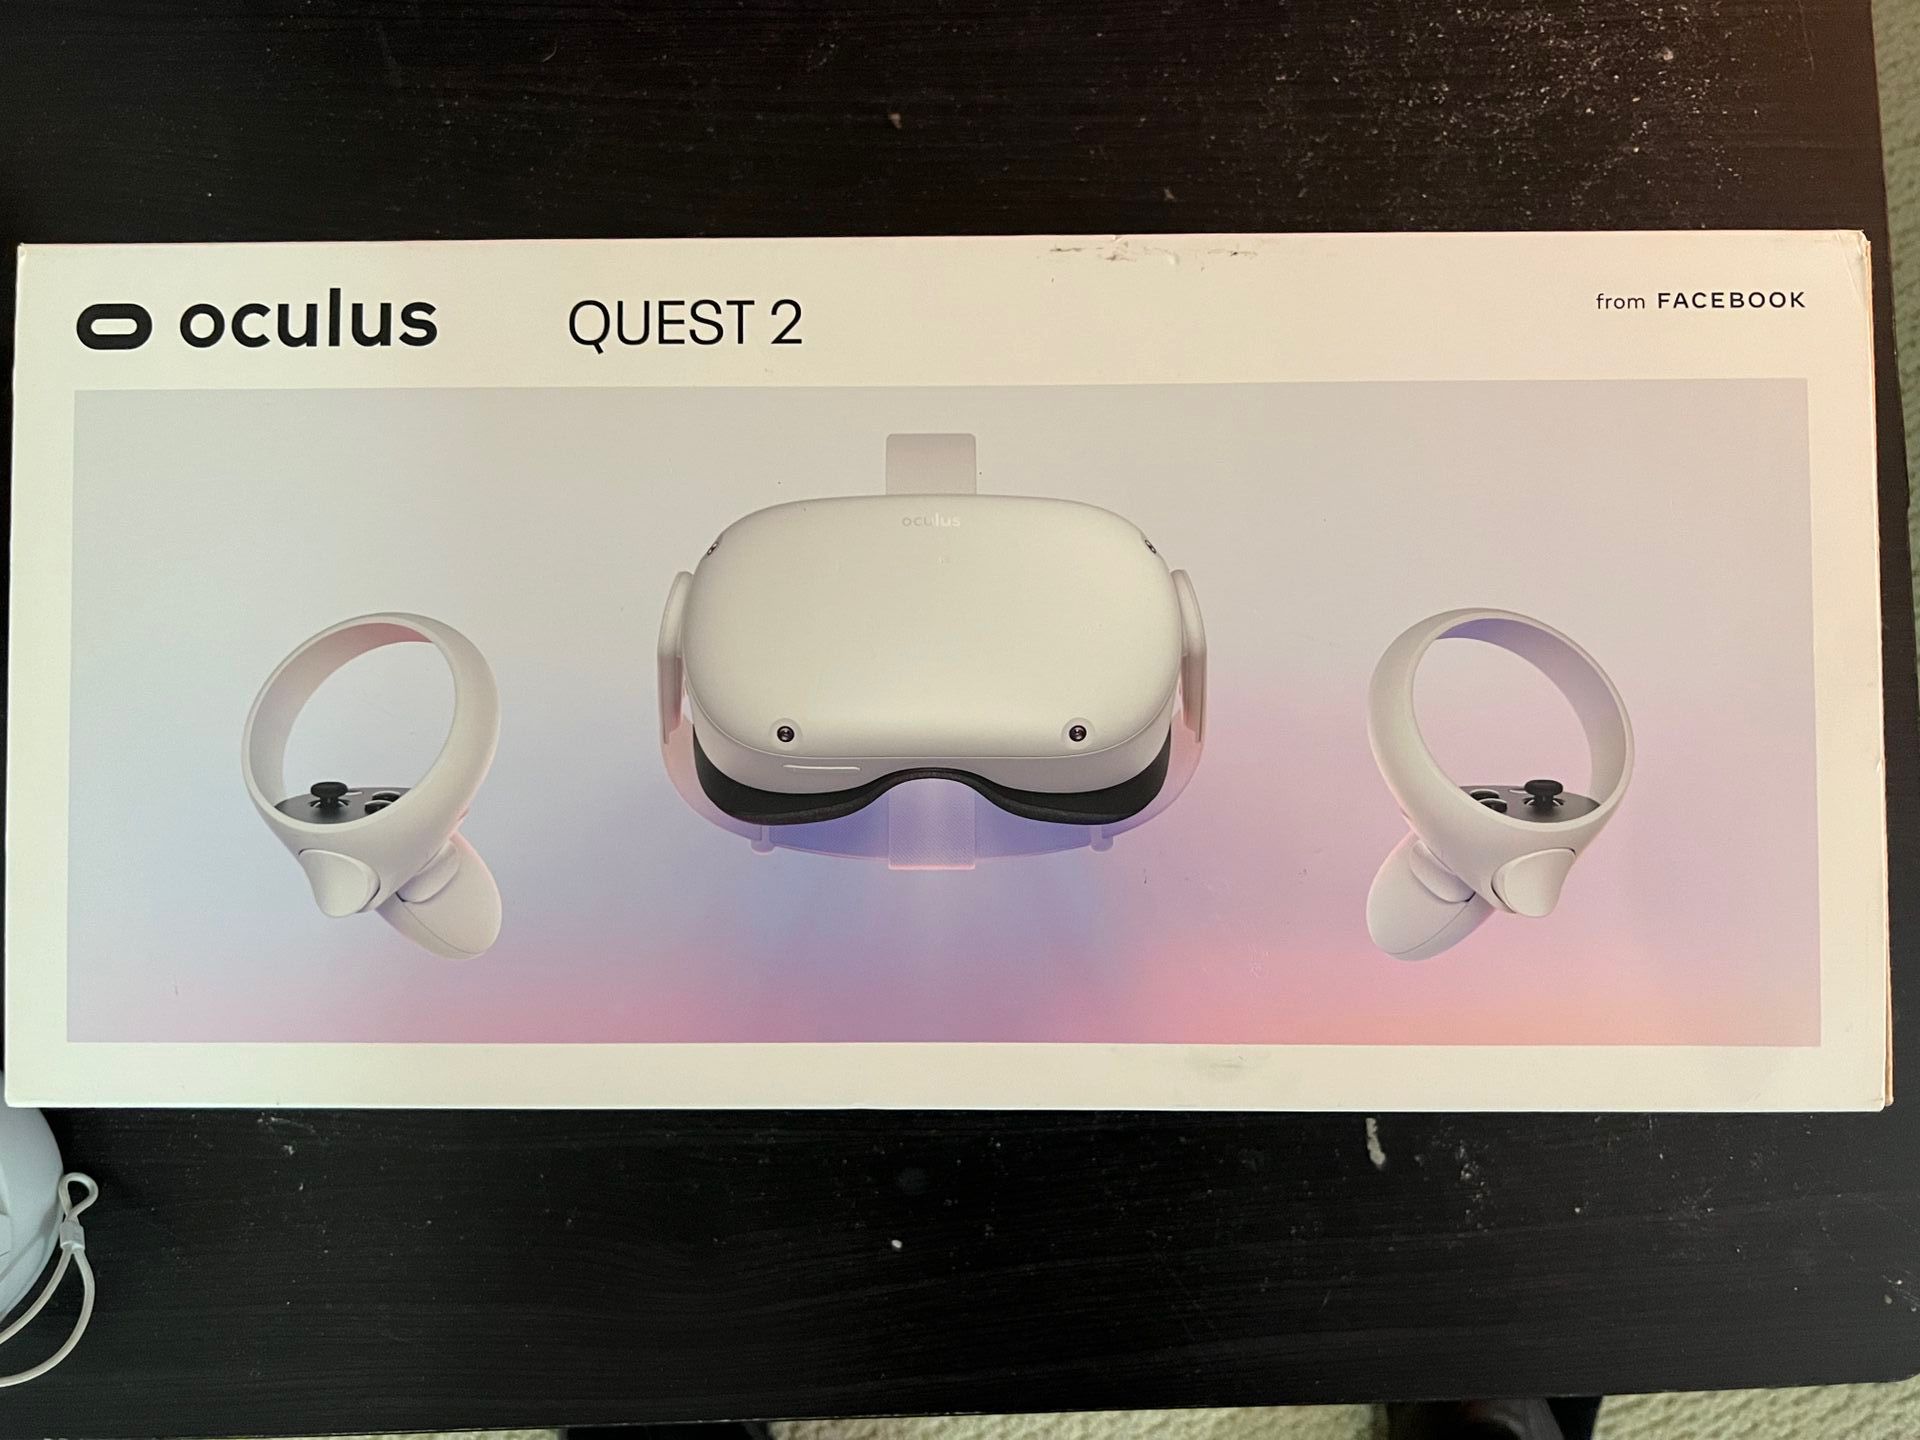 Oculus Quest 2 - 256GB